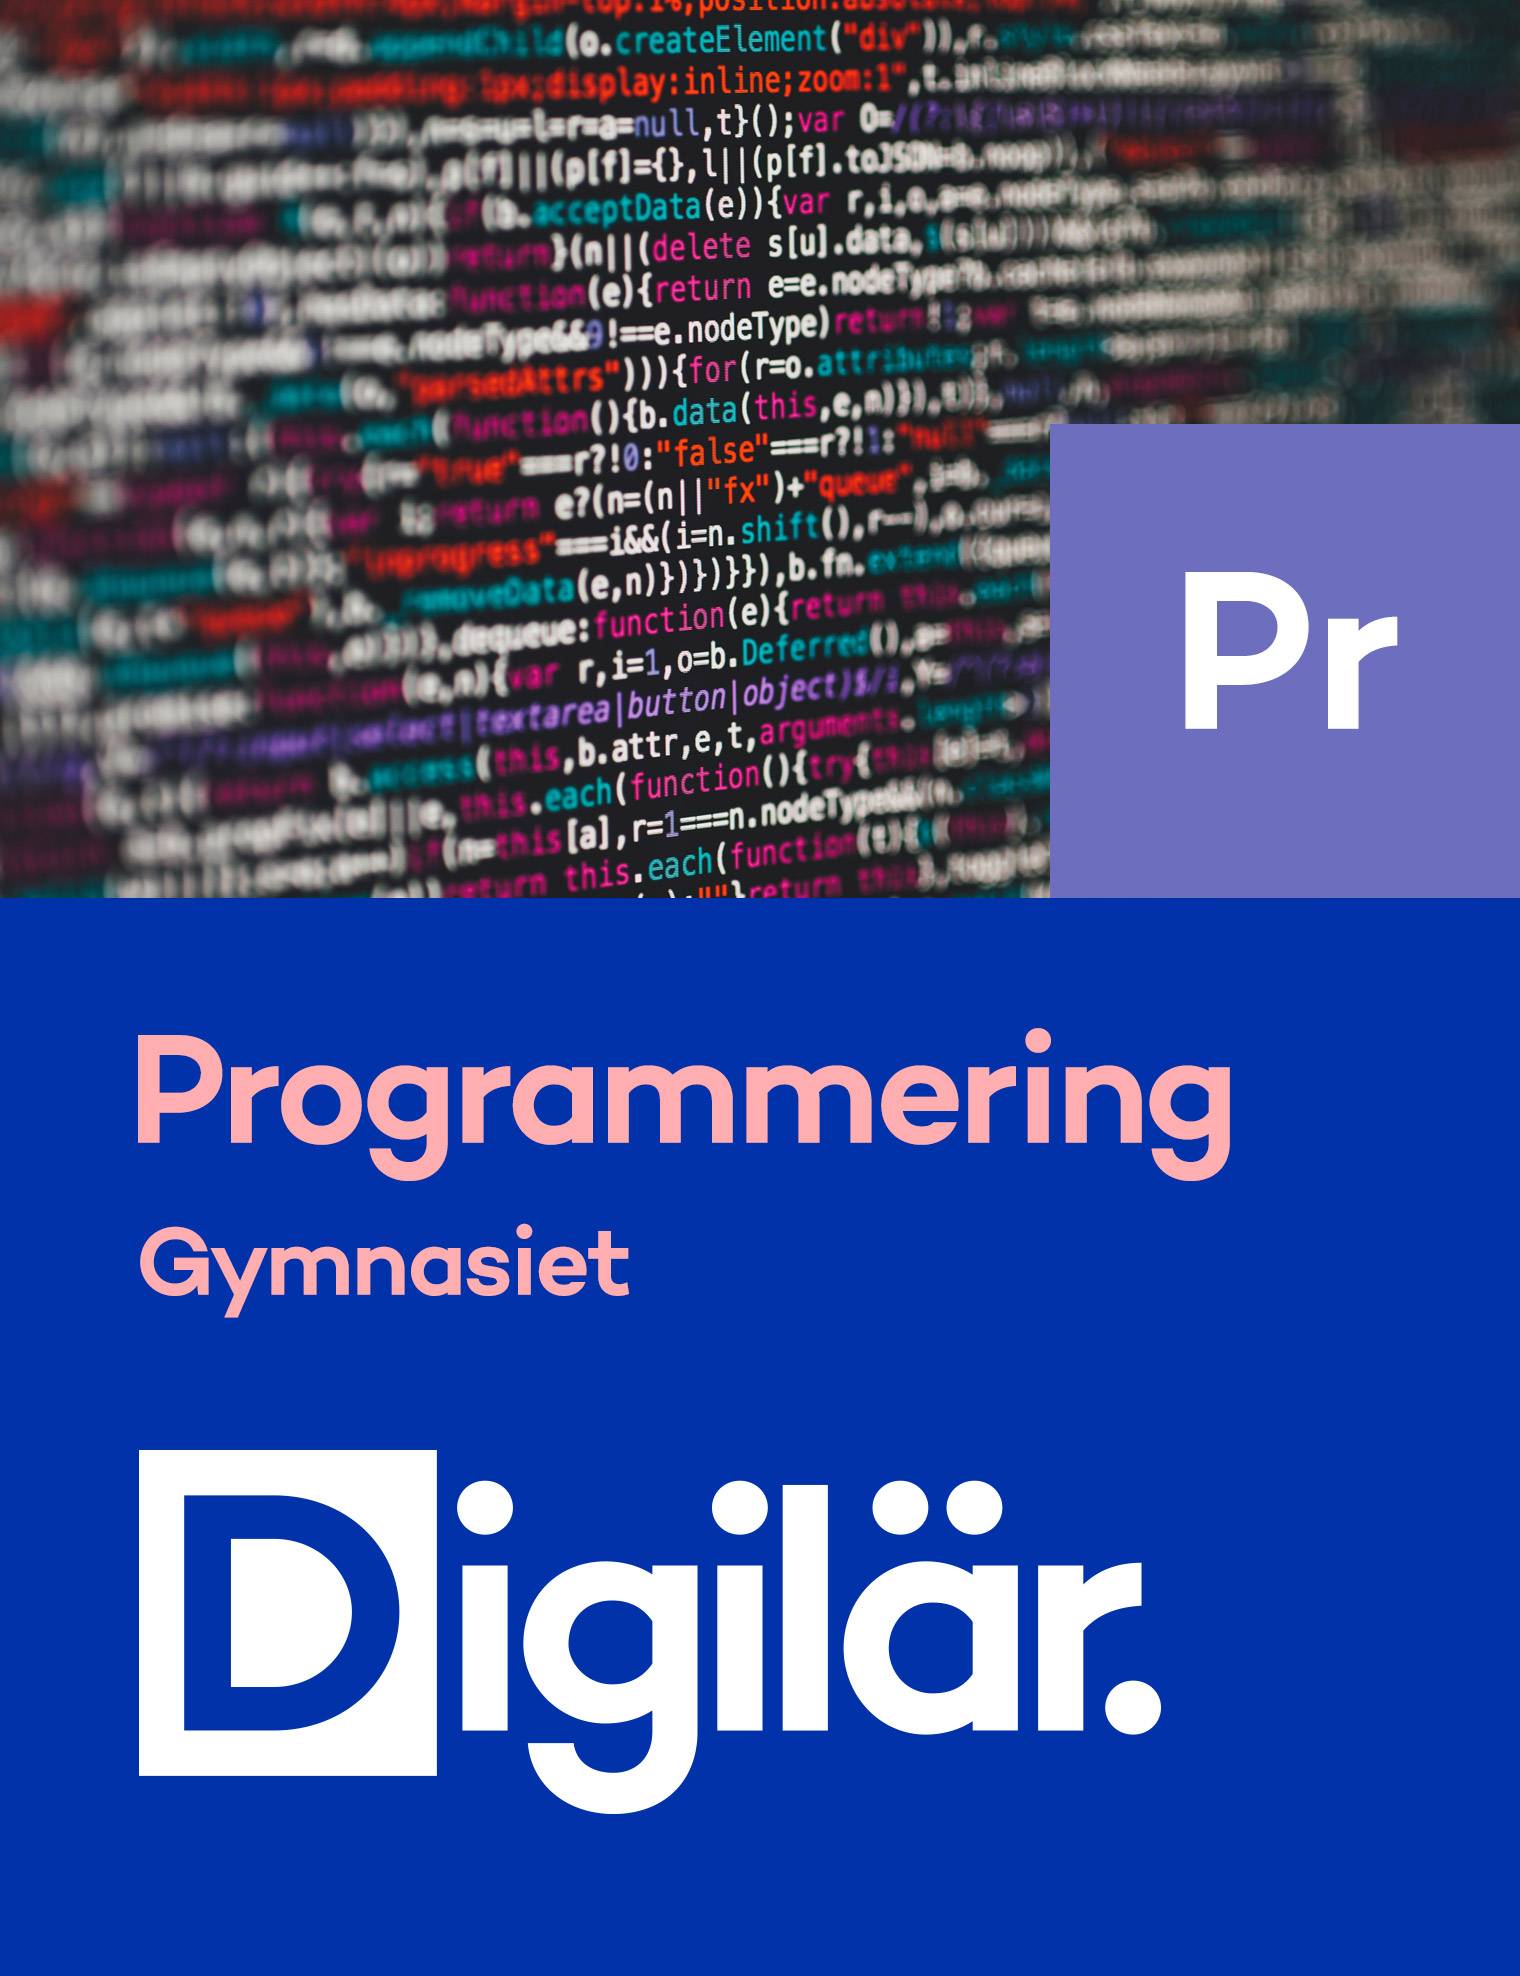 Programmering 1 C# Digital